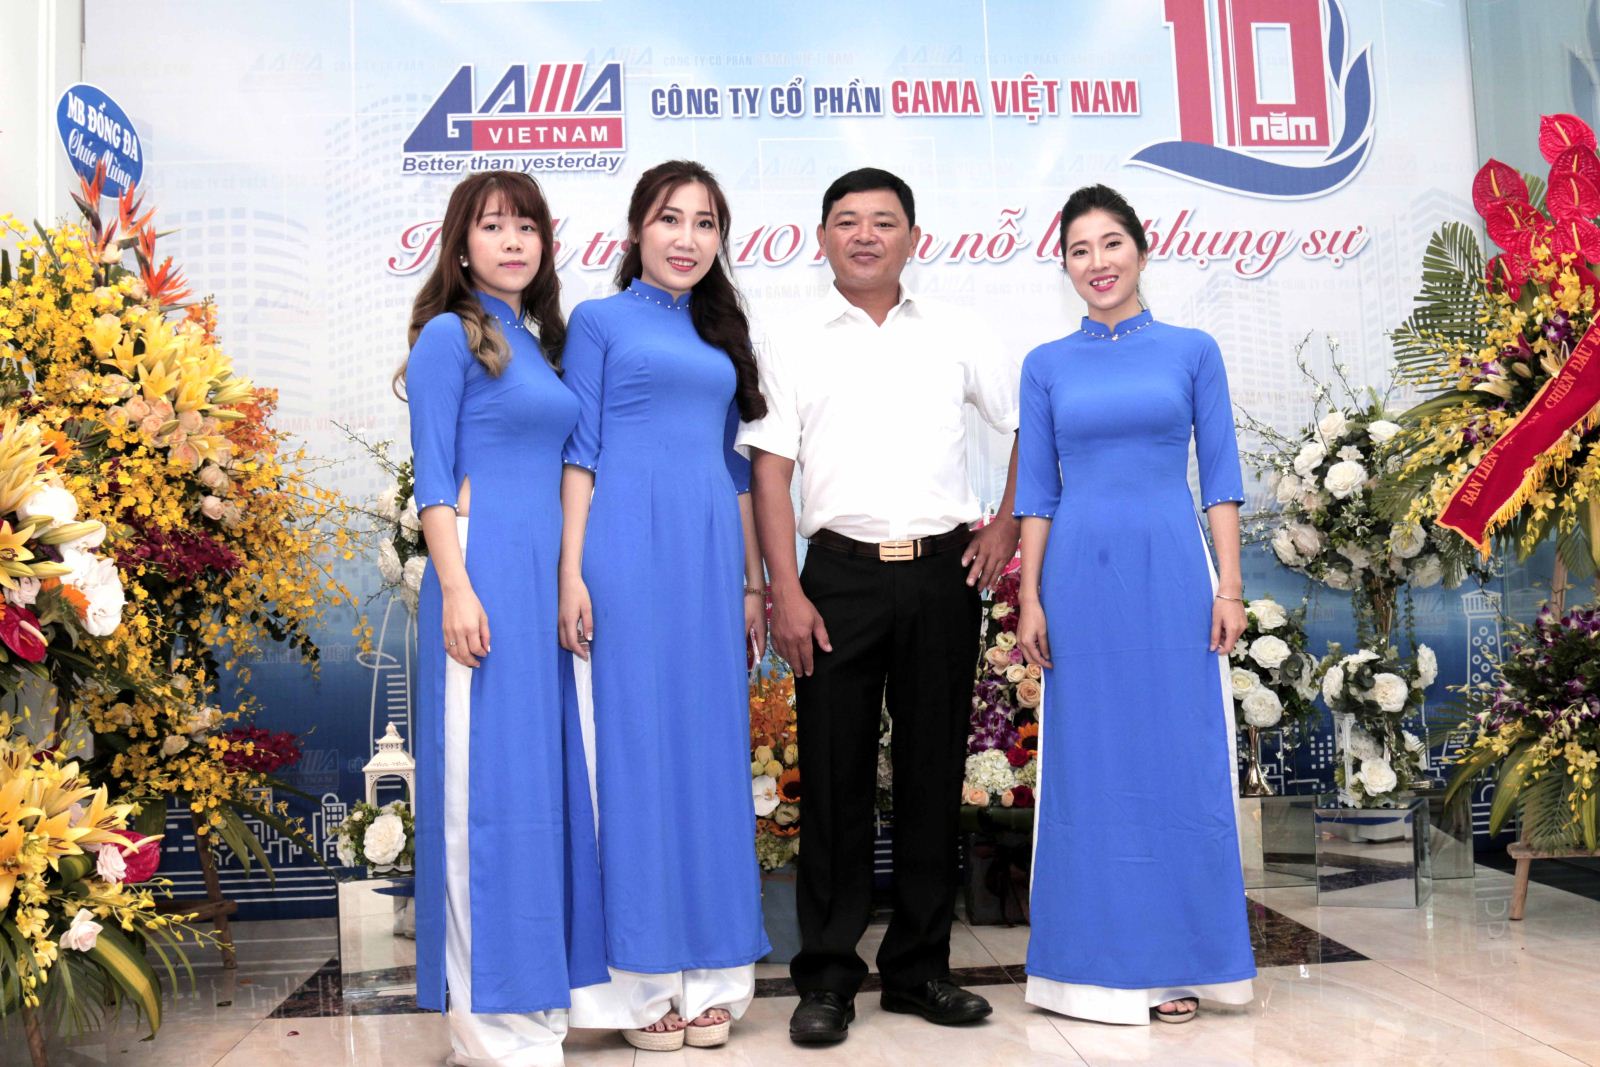 Công ty Cổ phần Gama Việt Nam tuyển dụng vị trí Kế toán